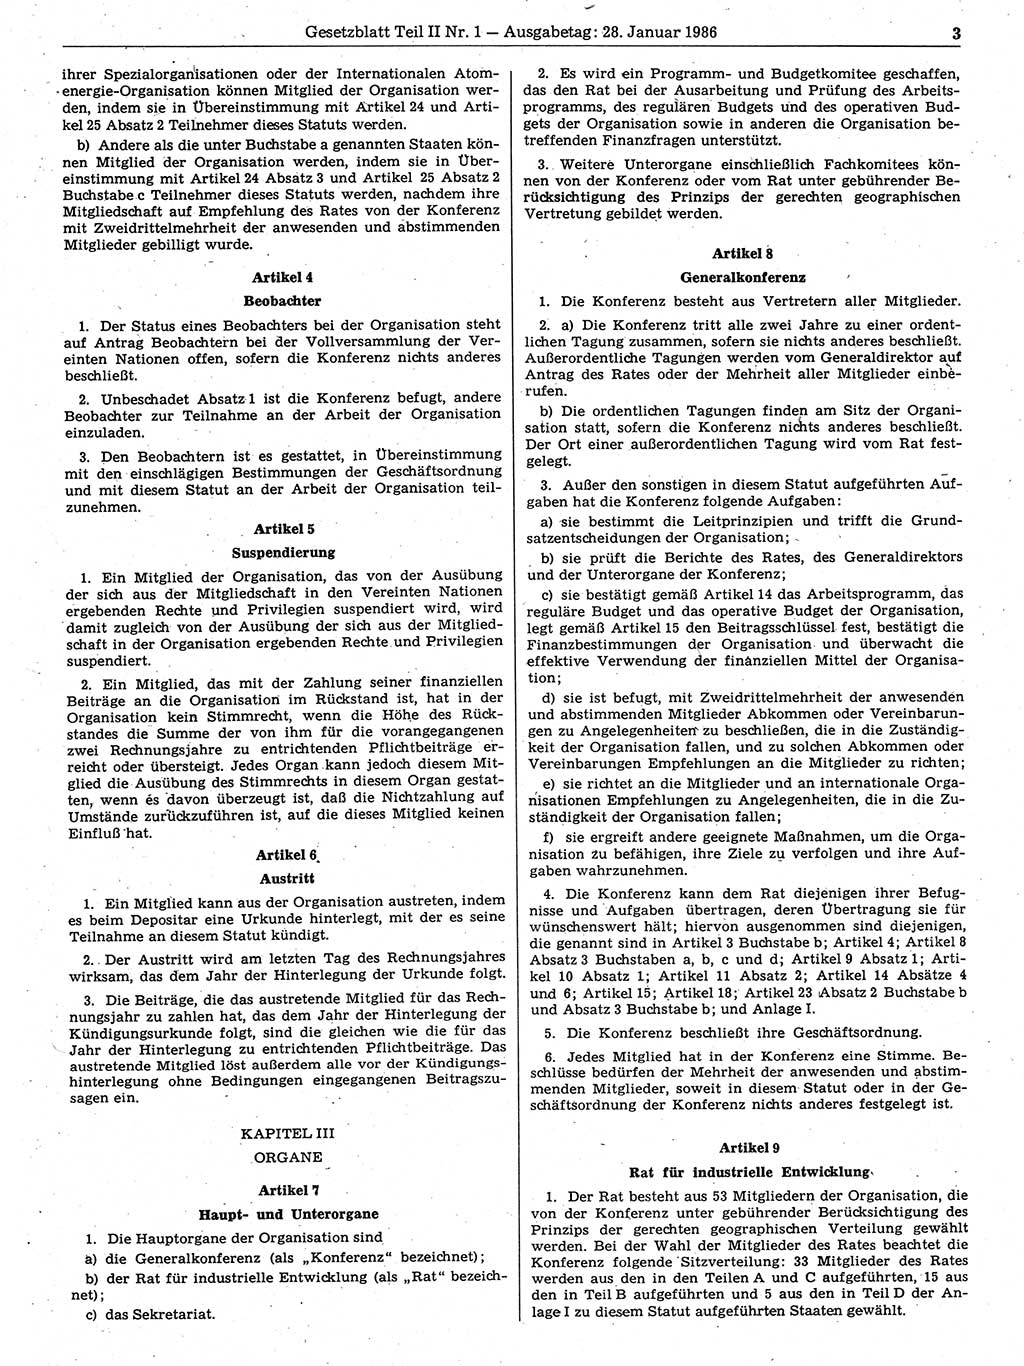 Gesetzblatt (GBl.) der Deutschen Demokratischen Republik (DDR) Teil ⅠⅠ 1986, Seite 3 (GBl. DDR ⅠⅠ 1986, S. 3)